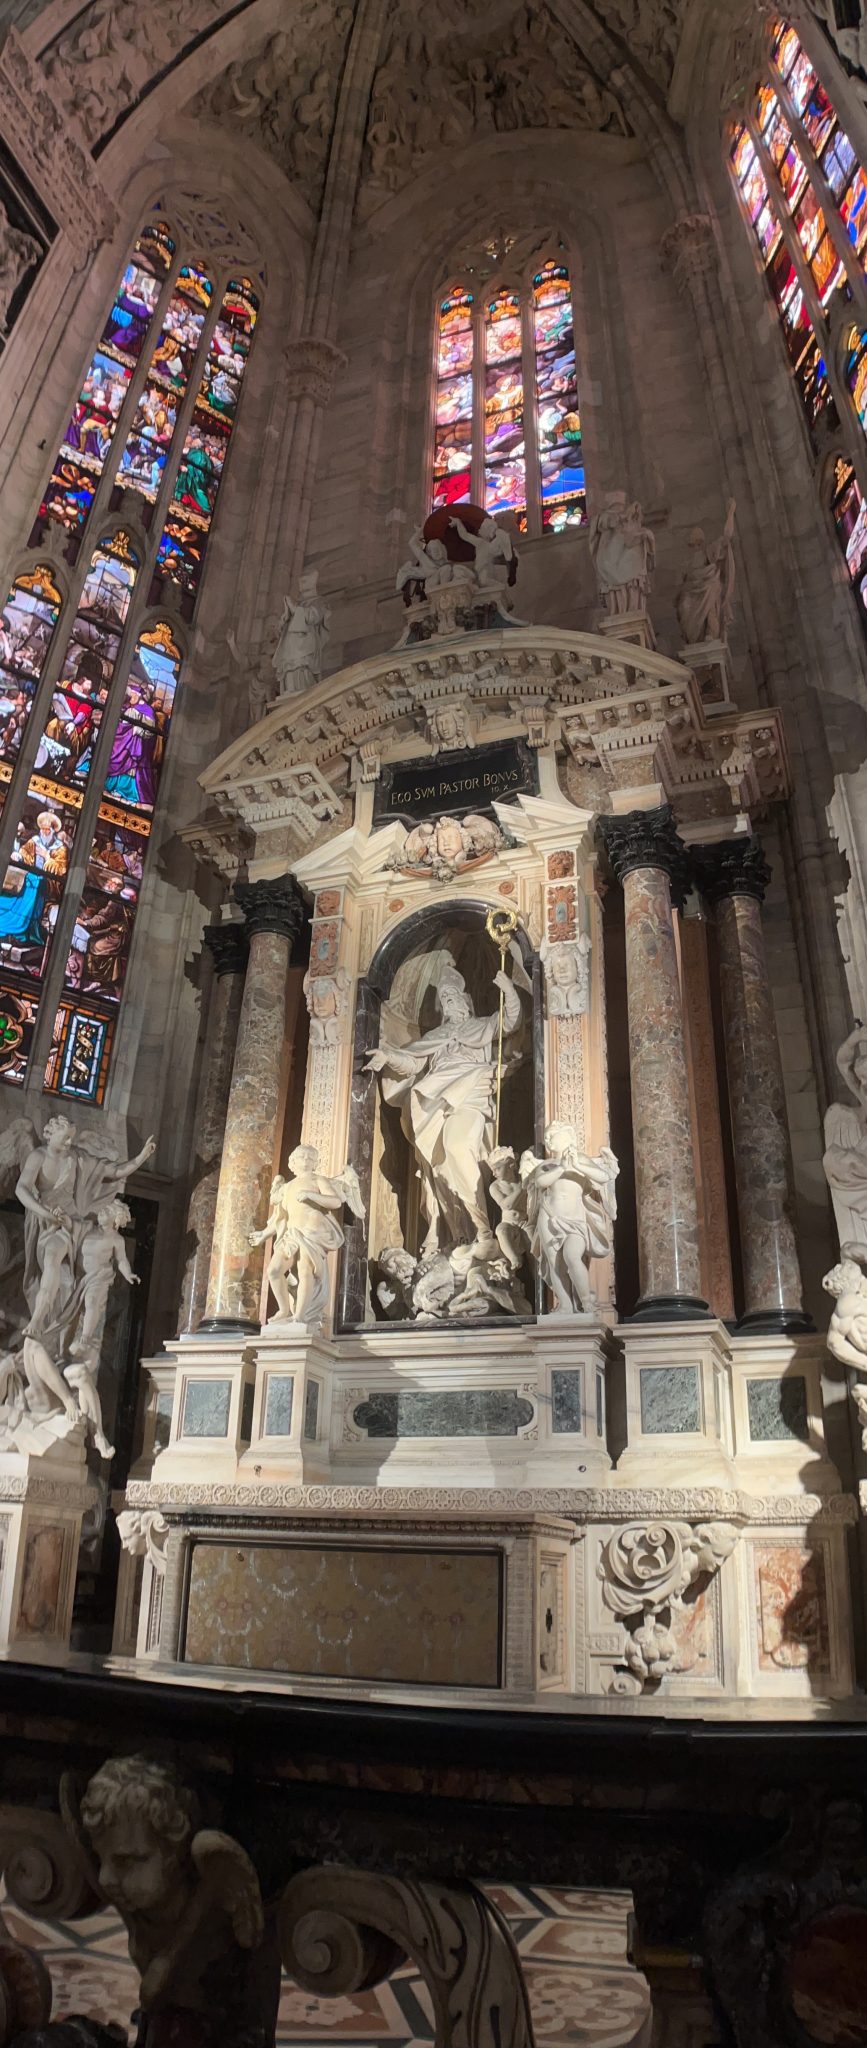 Statue, duomo de milano, milan, italy, cathedral